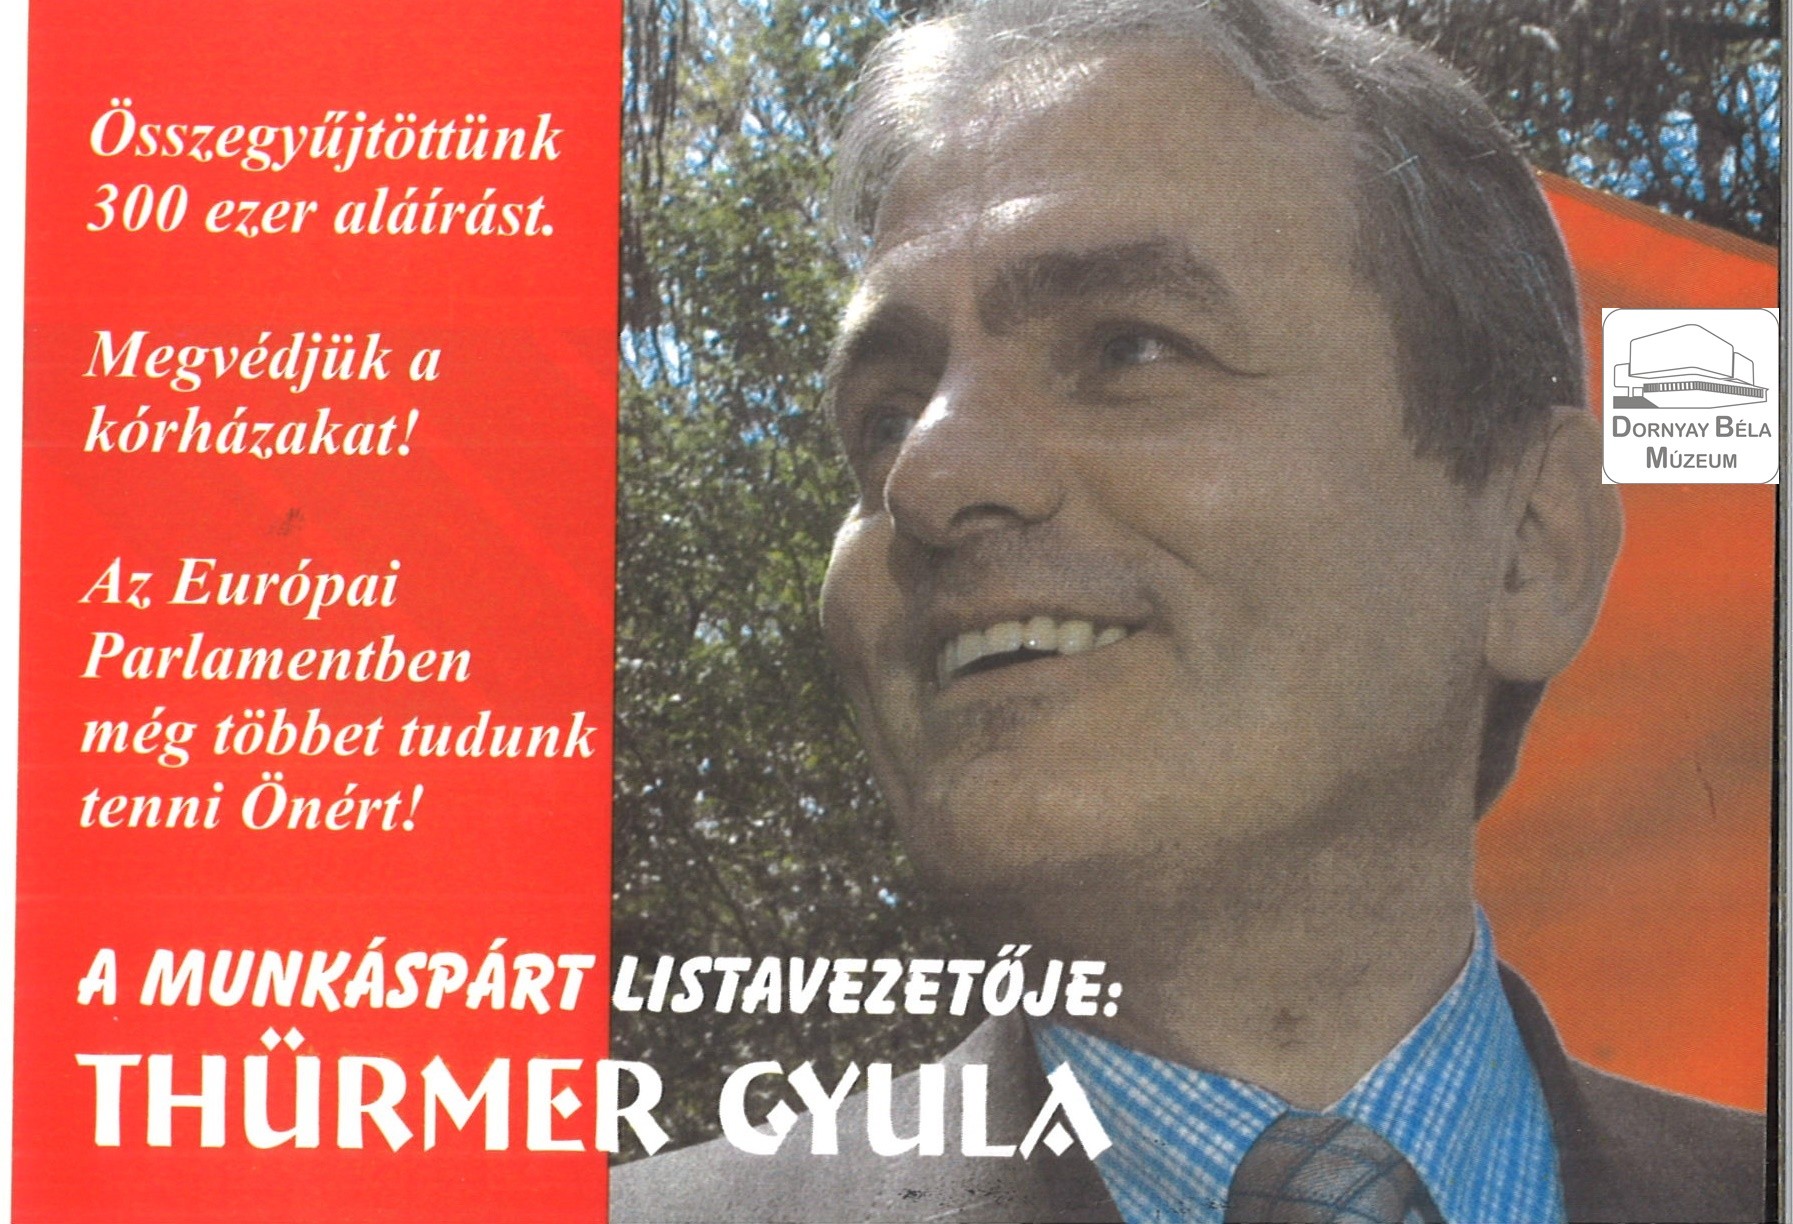 A munkáspárt listavezetője: Thürmer Gyula (Dornyay Béla Múzeum, Salgótarján CC BY-NC-SA)